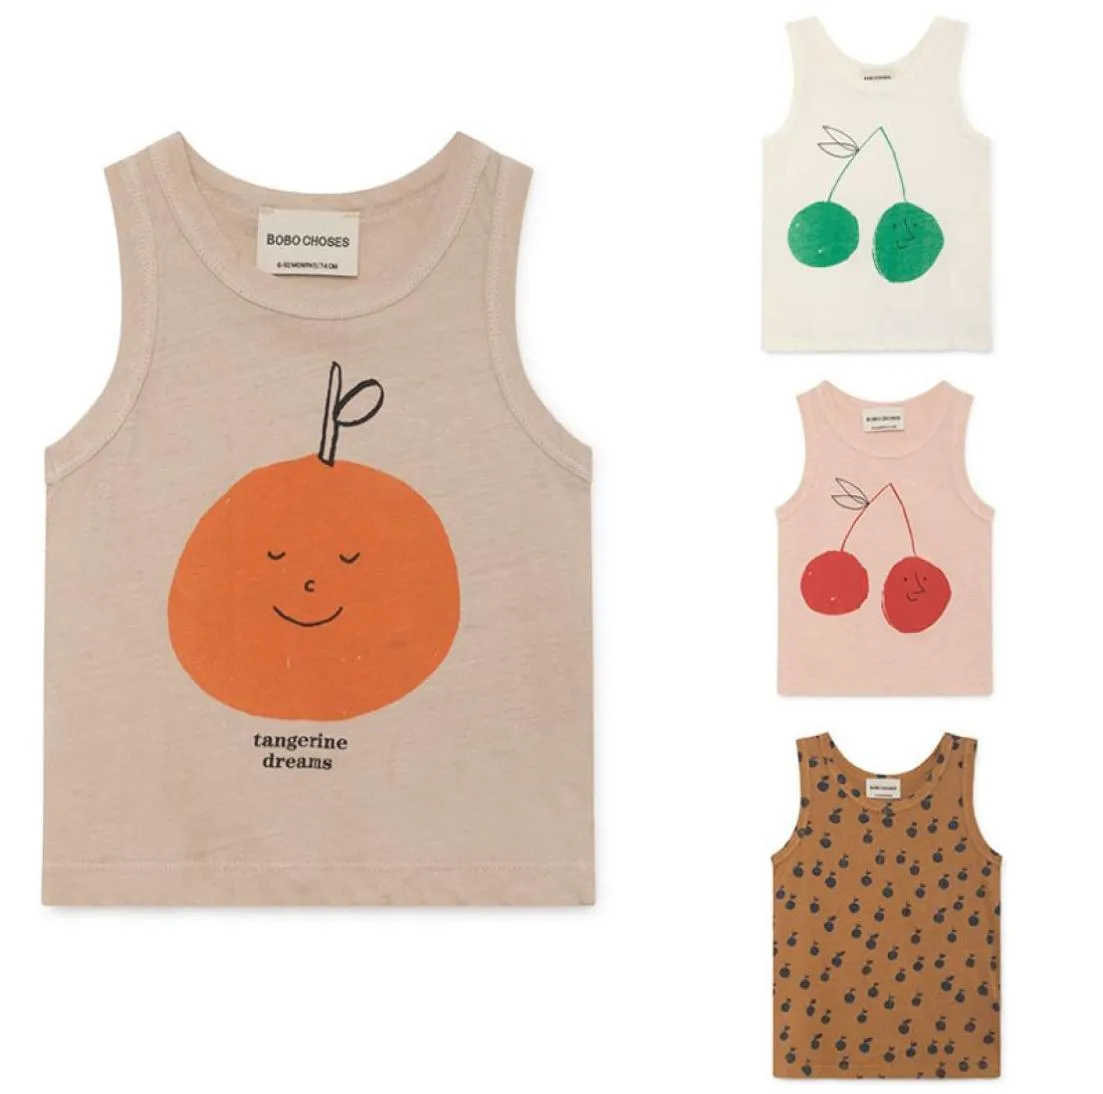 Fashion Bobo Choses 2019 Summer Kids Vest Tshirt för pojkar och flickor barn Bobo valde Cherry Apple Print Tops Tank Y1905187319582